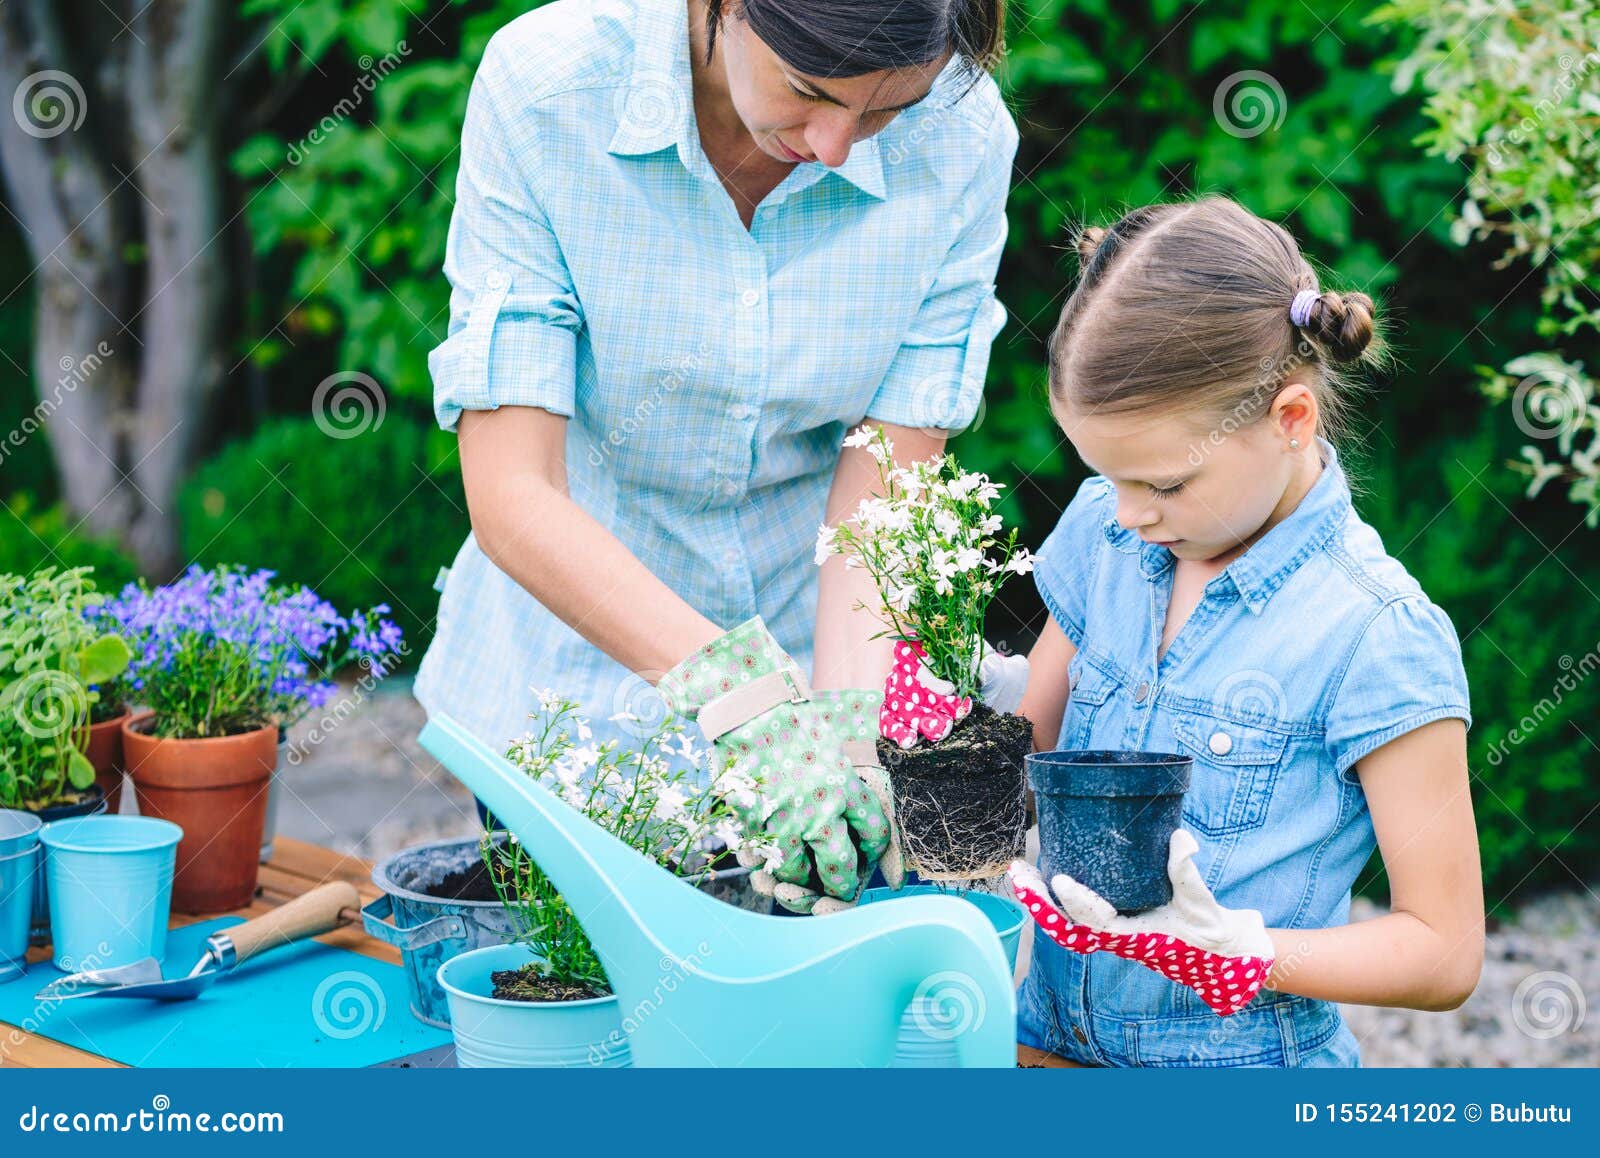 Мама цветы в горшке. Горшок с цветами для мамы. Посадка цветов в горшки с ребенком. Дети сажают цветы в горшки. Вместе с мамой сажает цветы.